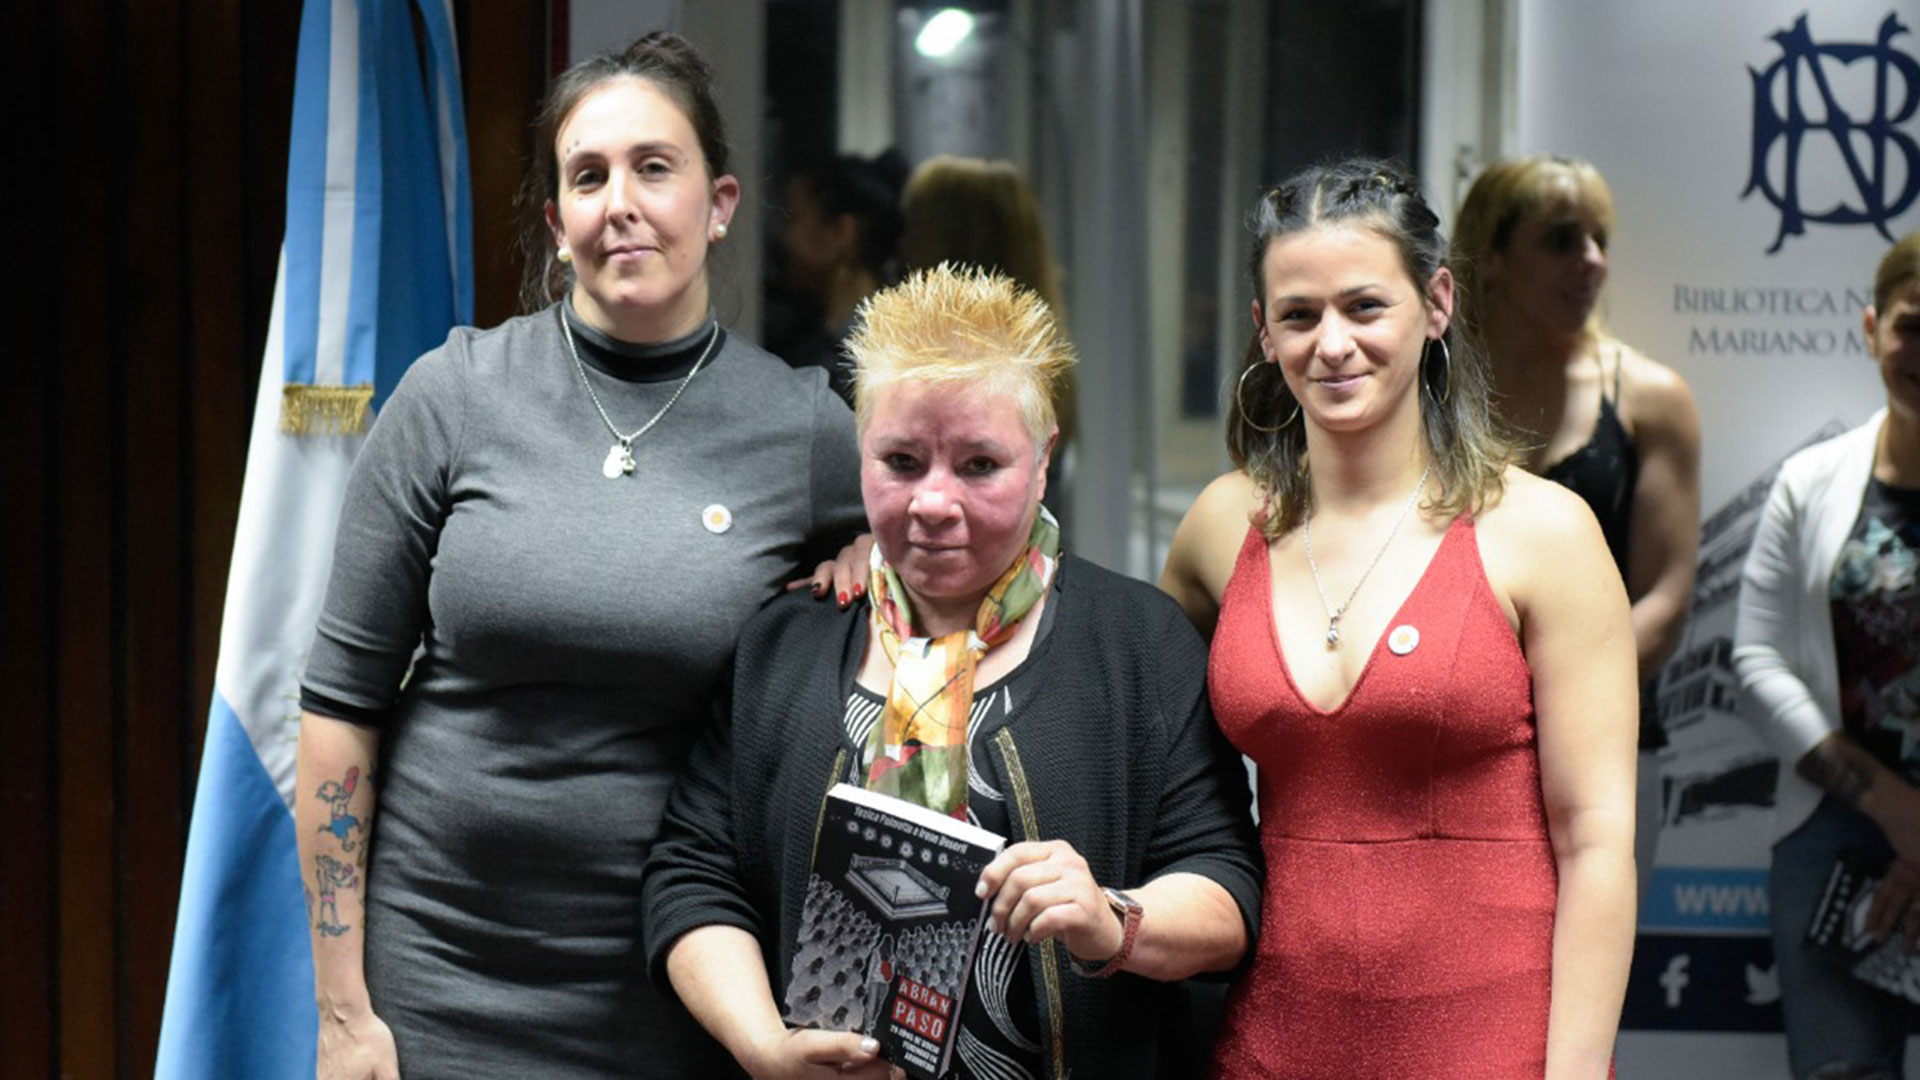 Las autoras de "Abran paso" con La Guapa Montiel, en la presentación del libro que se hizo este viernes en Buenos Aires con la presencia de boxeadores y personalidades relacionadas a ese deporte